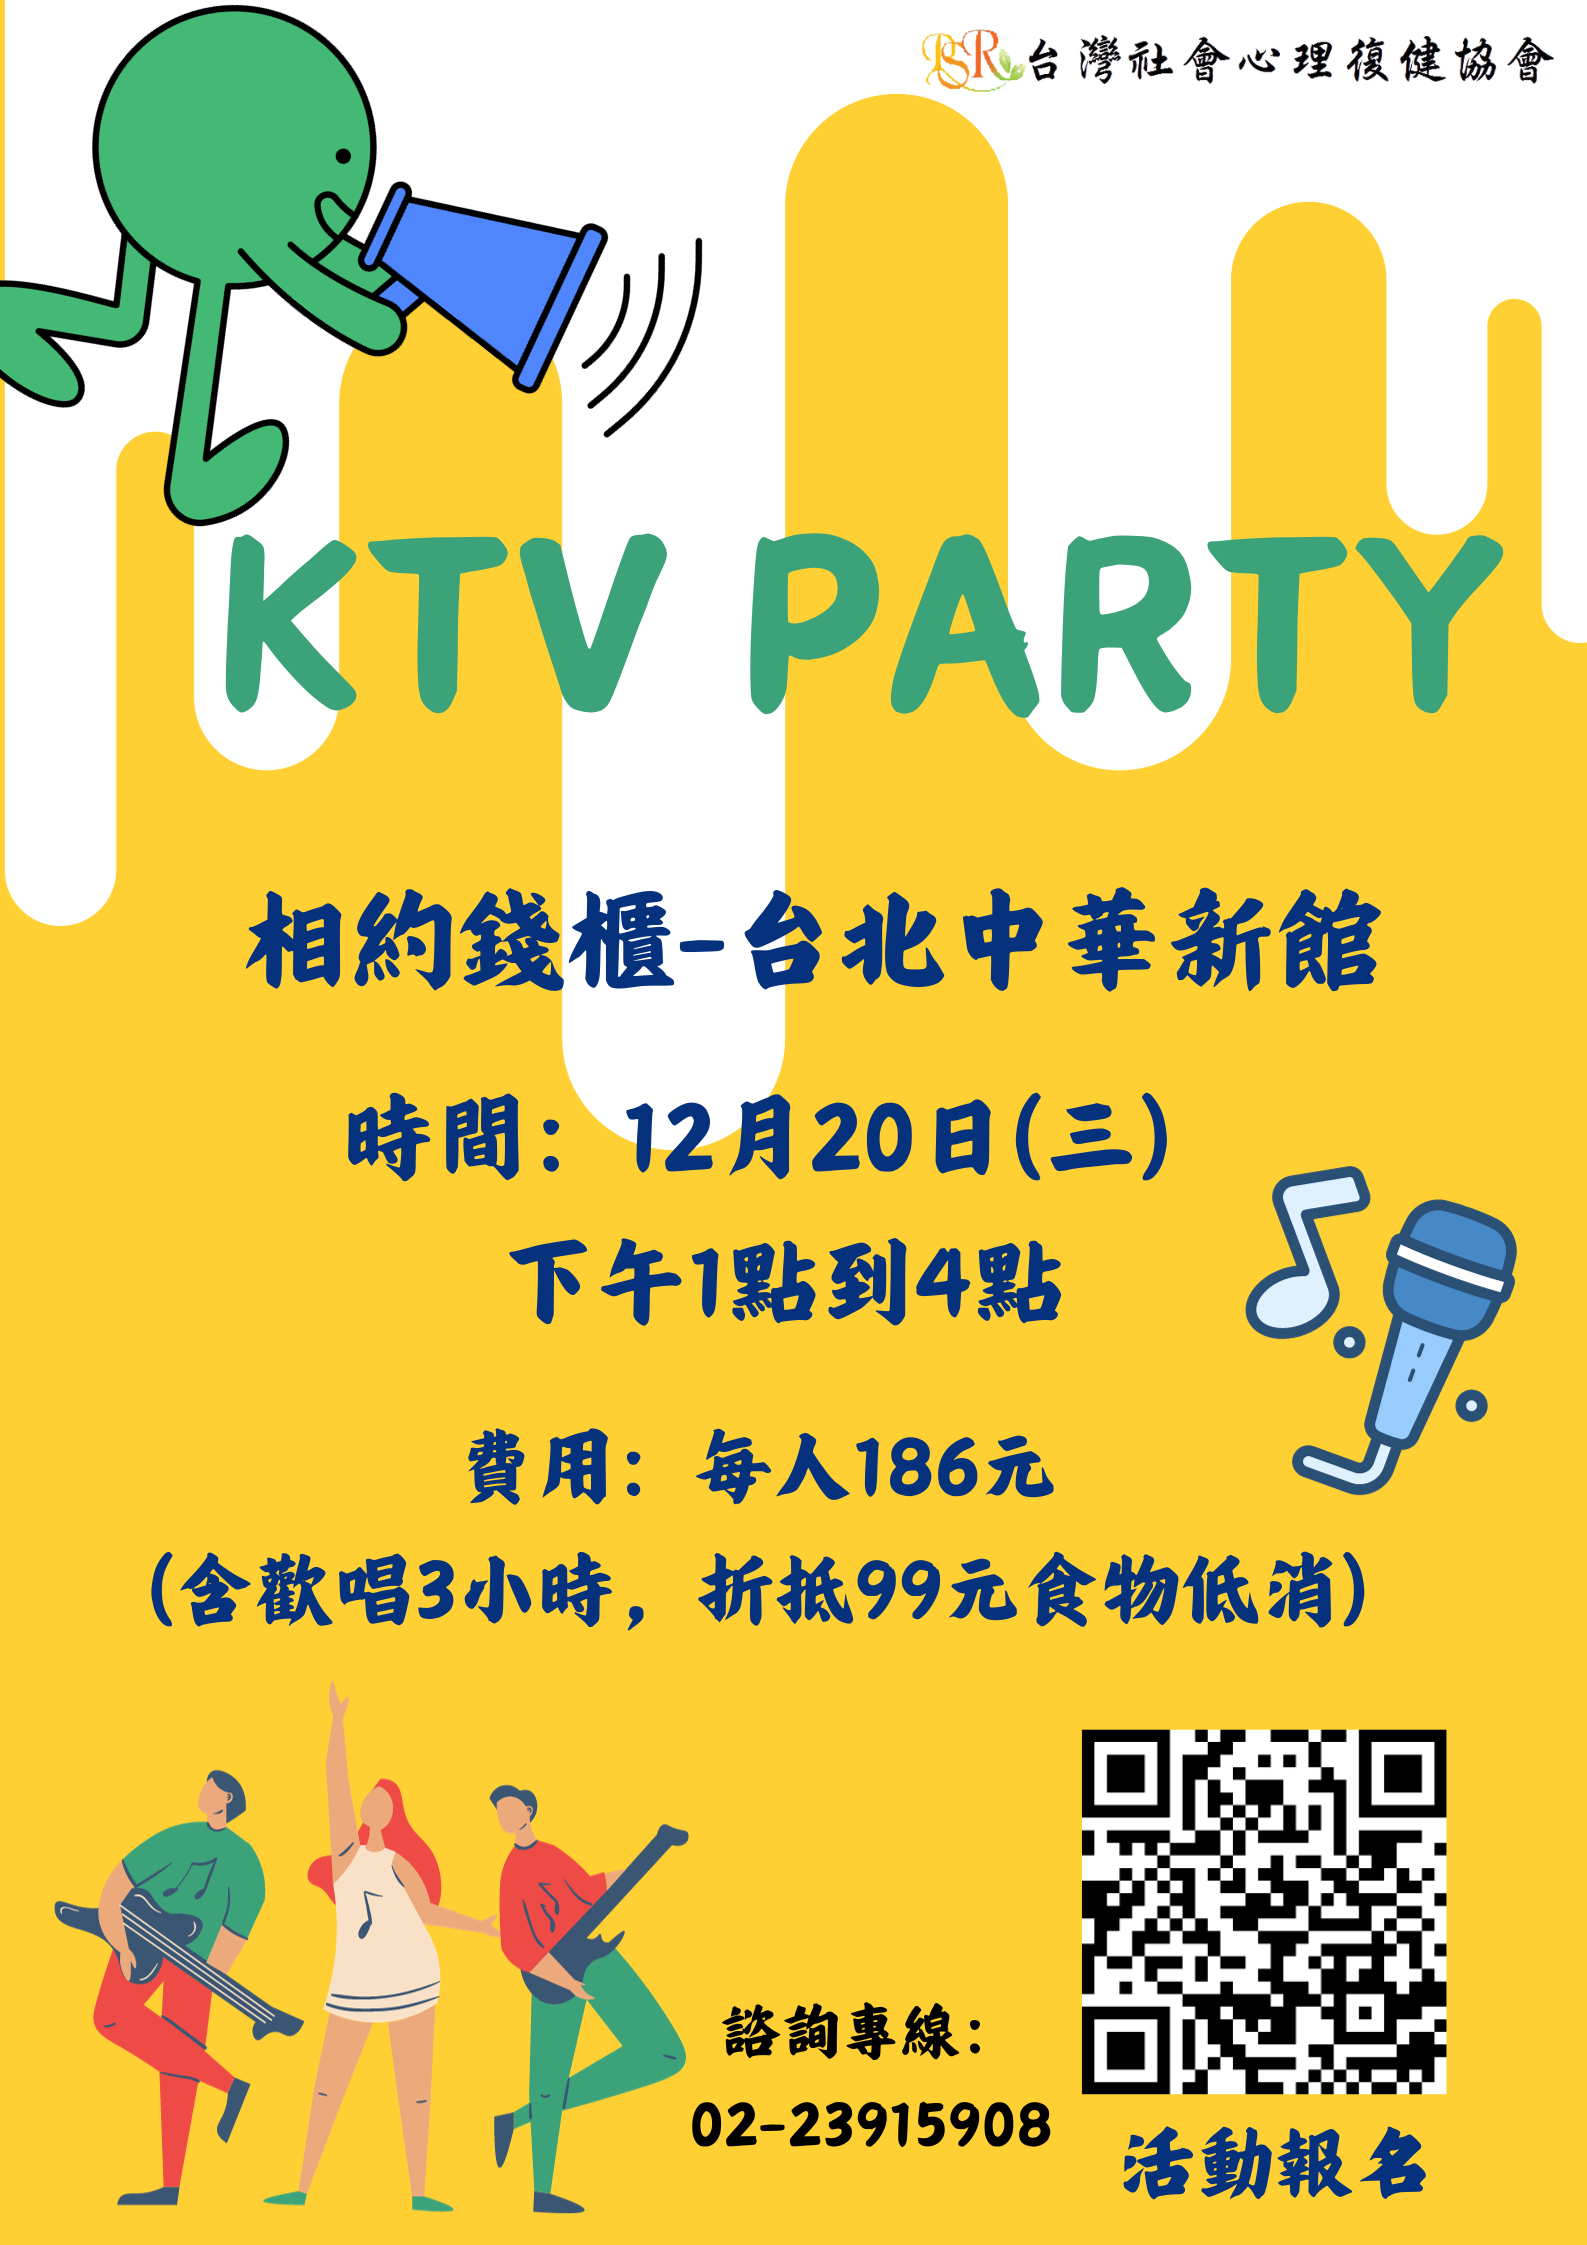 【活動報名】12/20 KTV Party